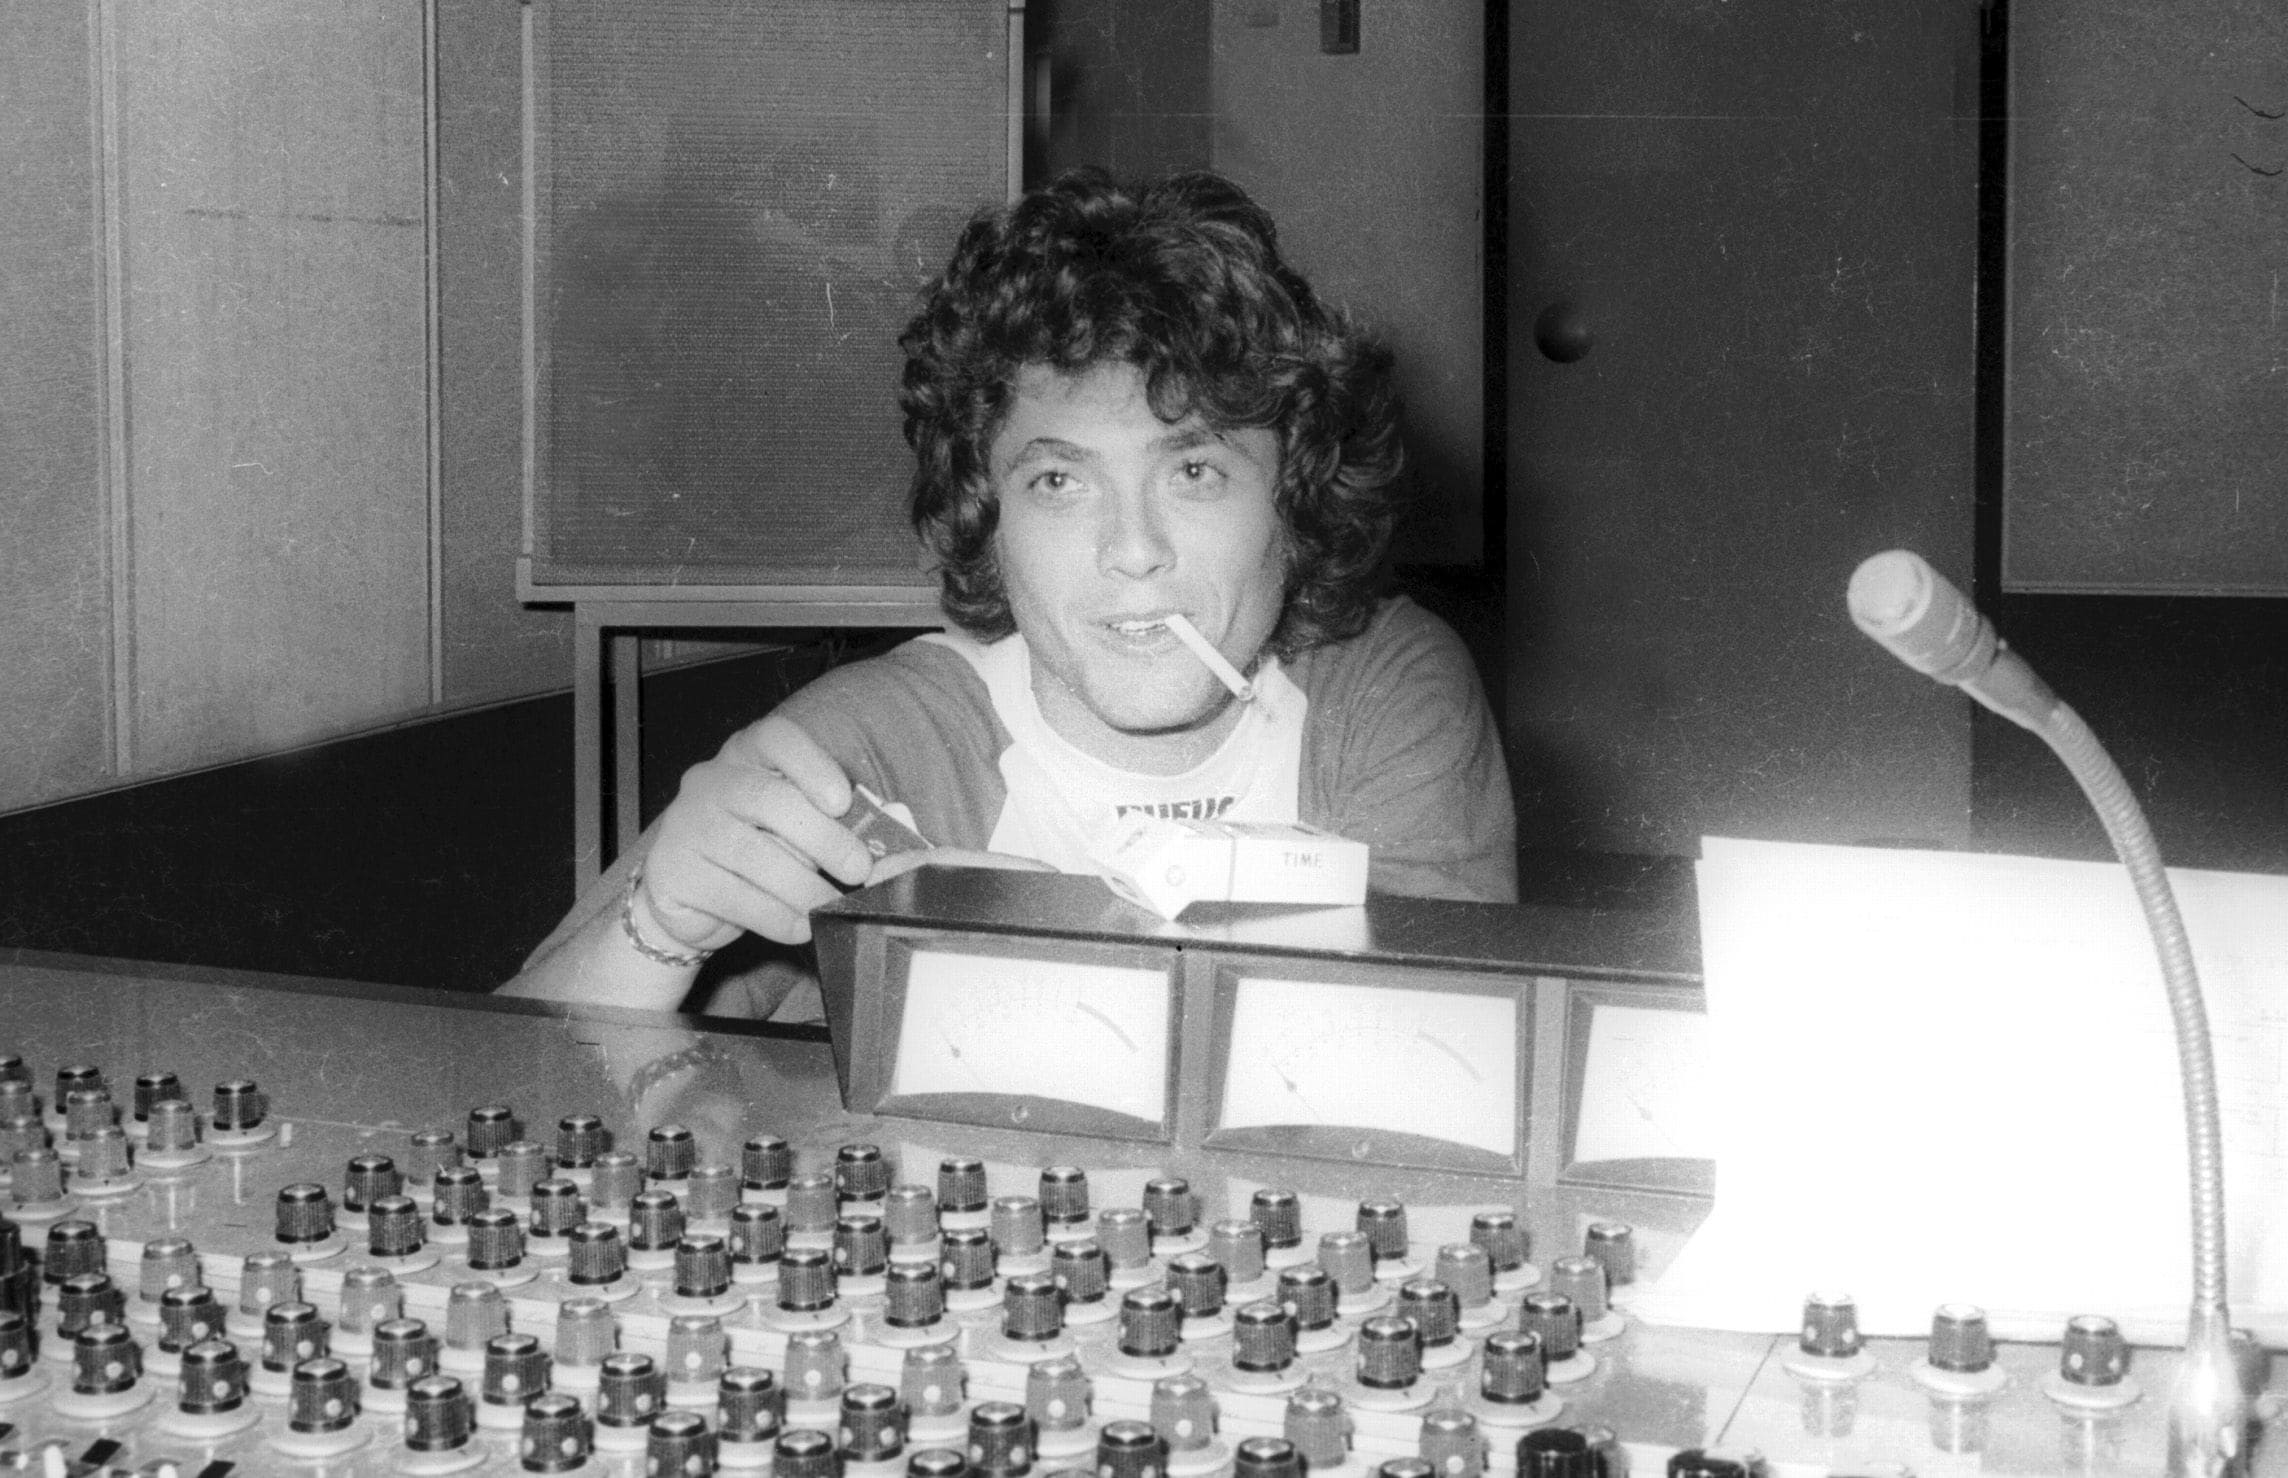 שלמה ארצי באולפן ההקלטות במרץ 1975 (צילום: שלמה סתר, אוסף דן הדני, הספרייה הלאומית)